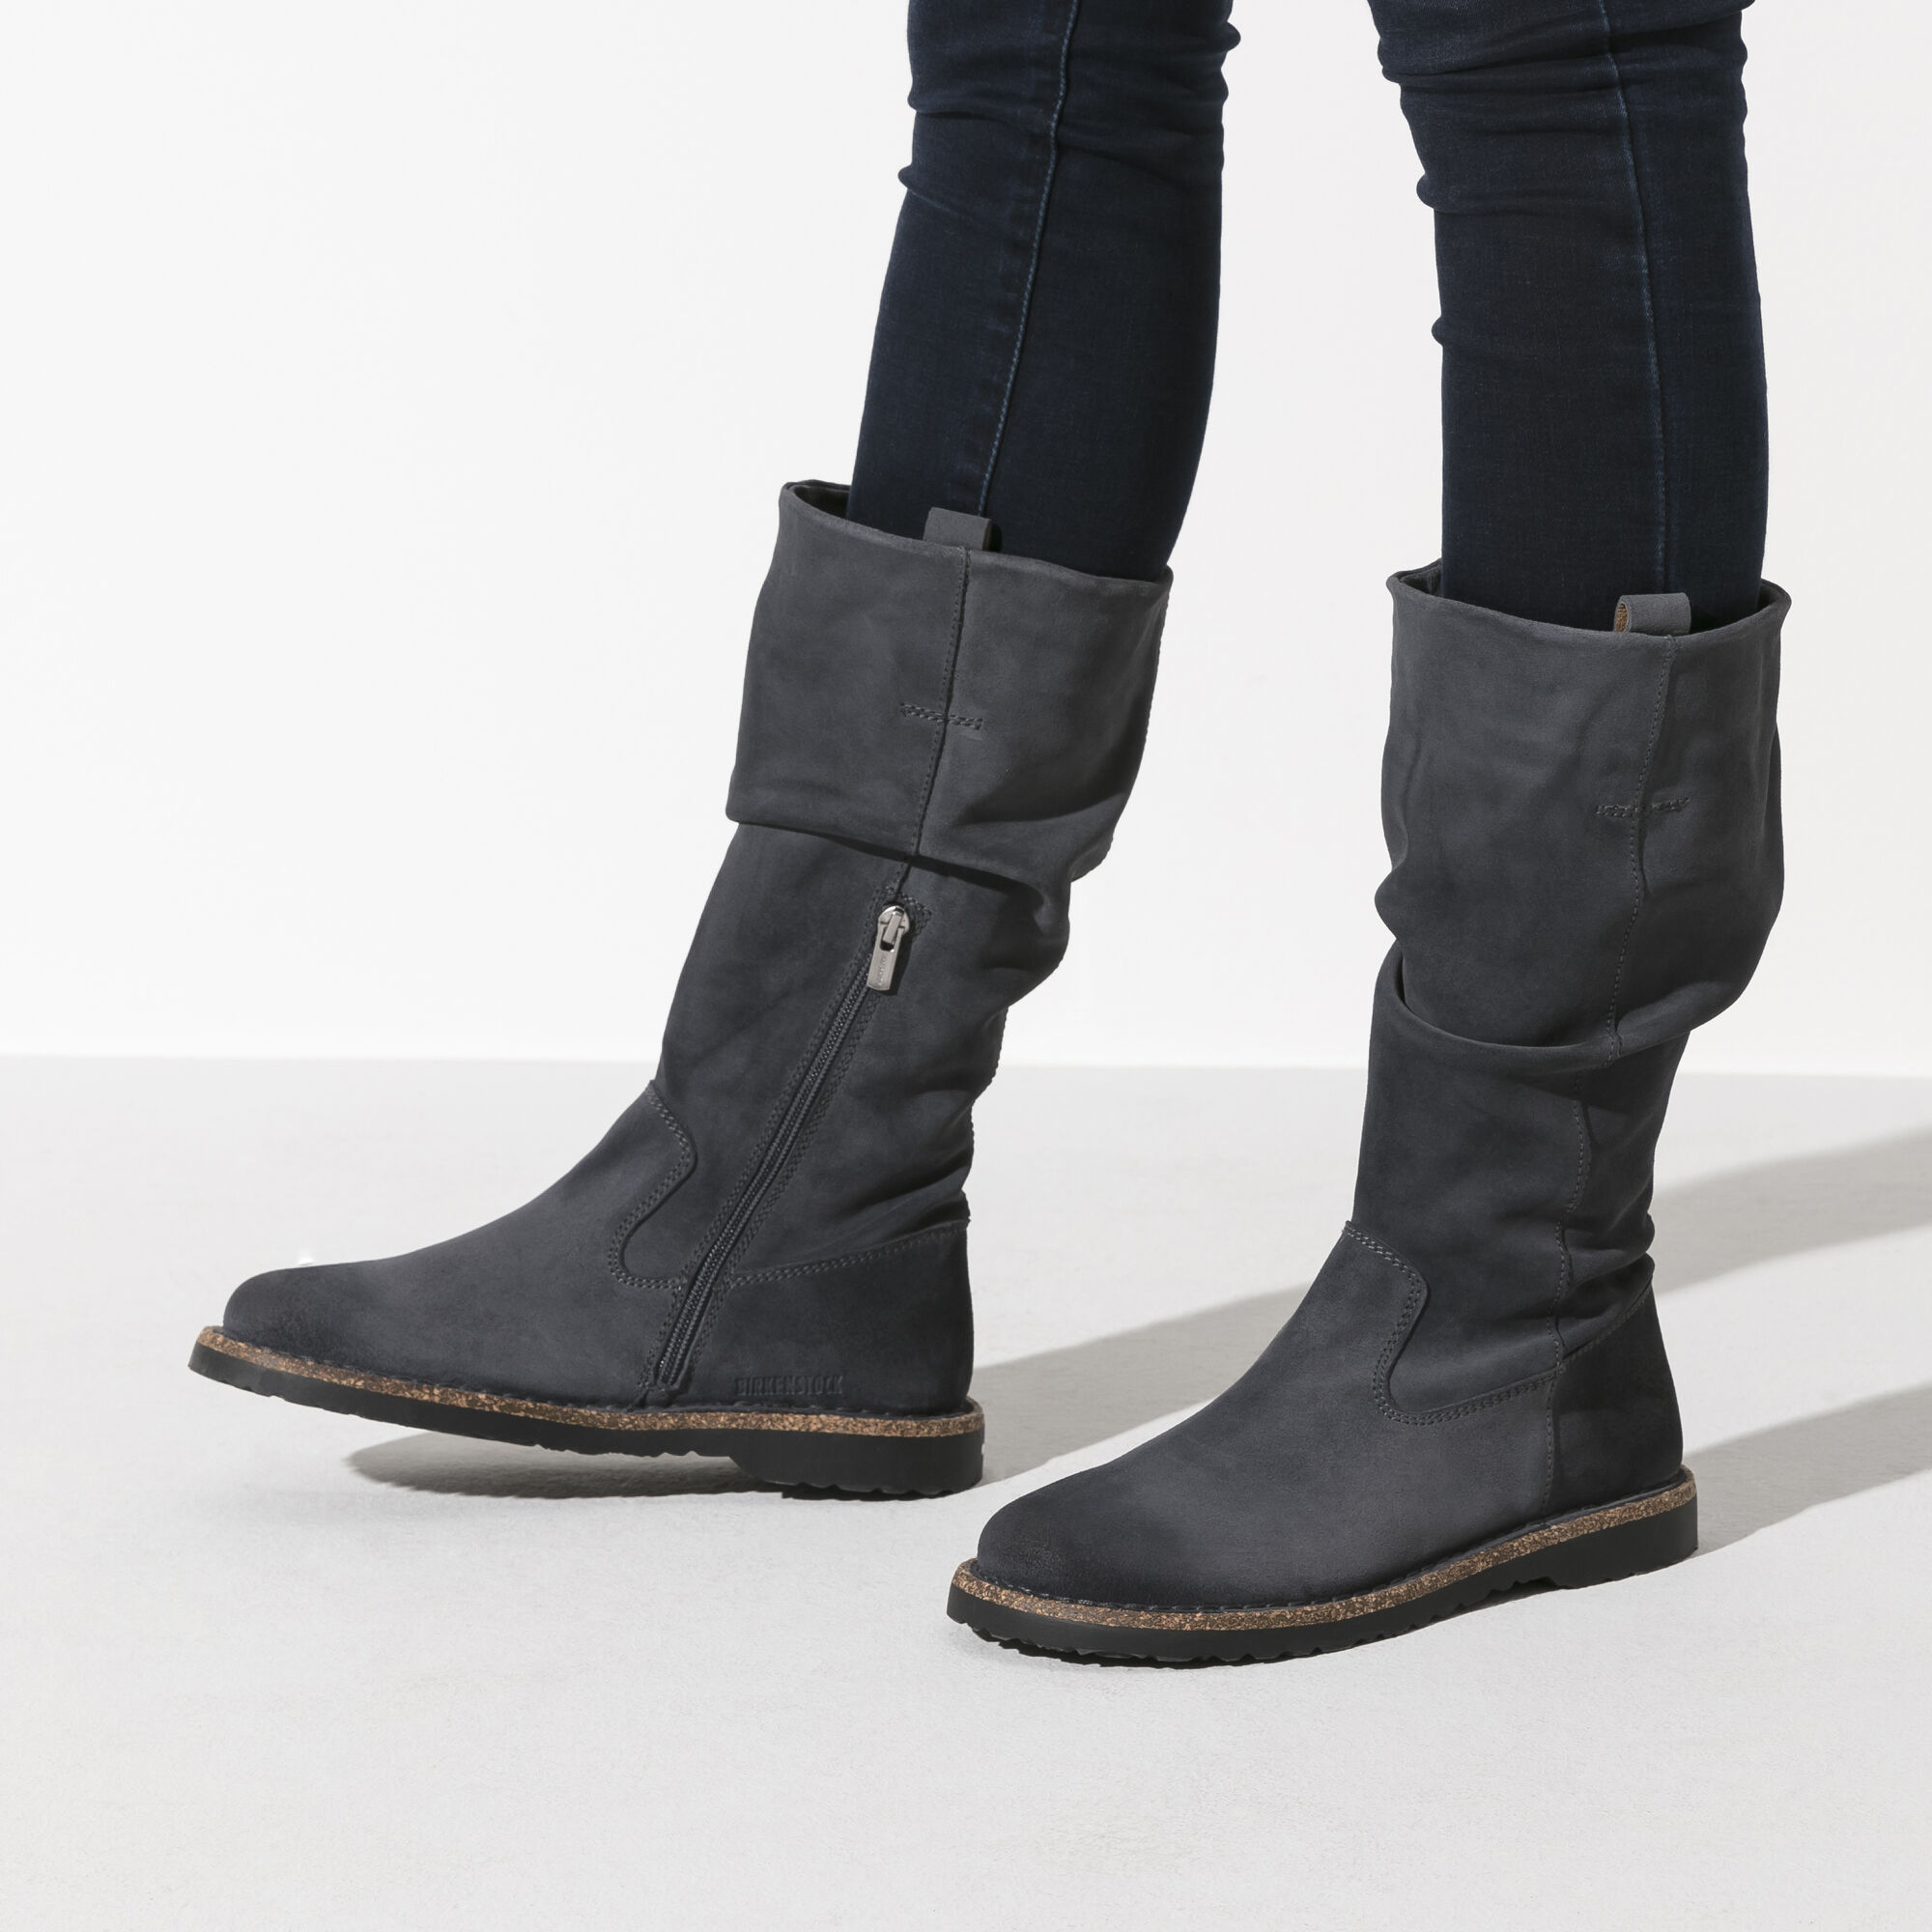 birkenstock tall boots